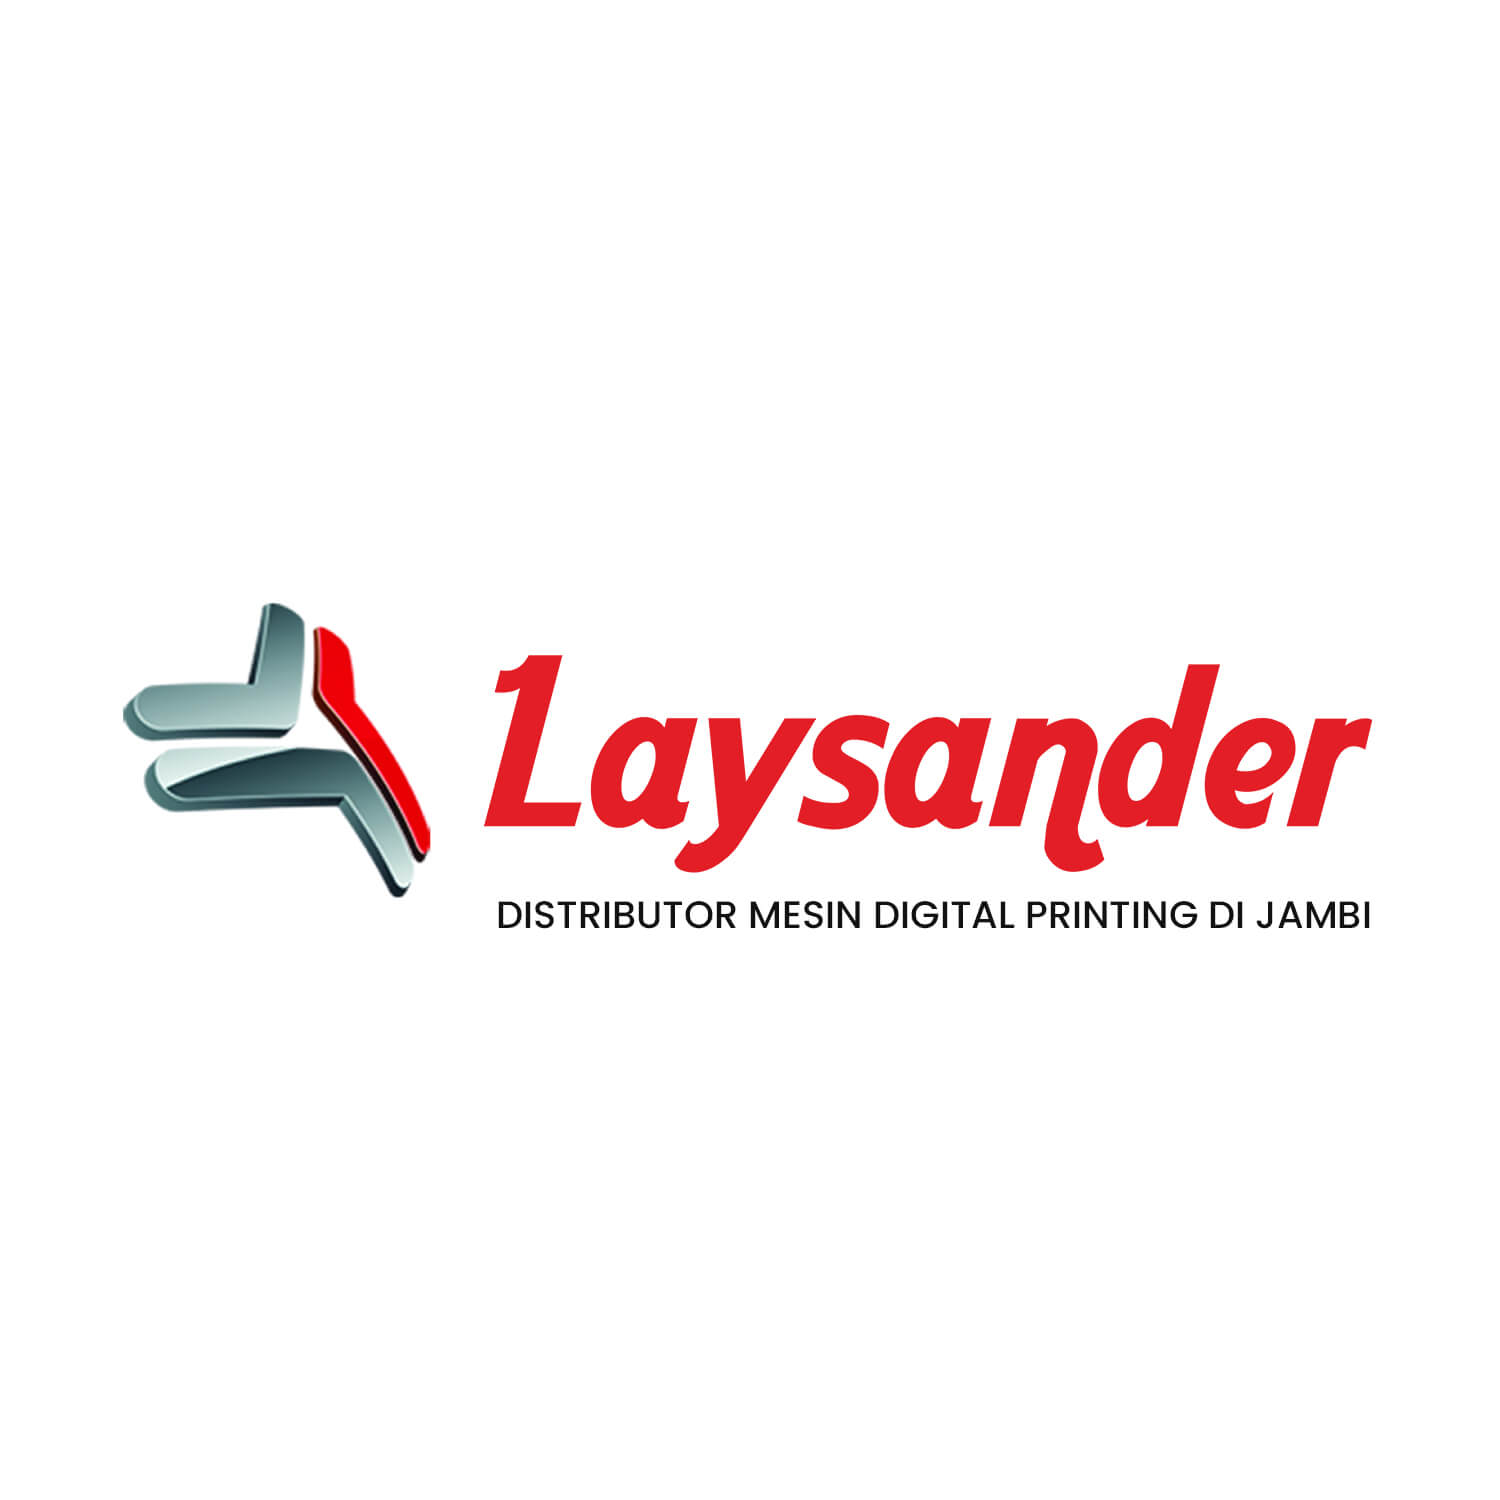 Laysander: Distributor Mesin Digital Printing Di Jambi